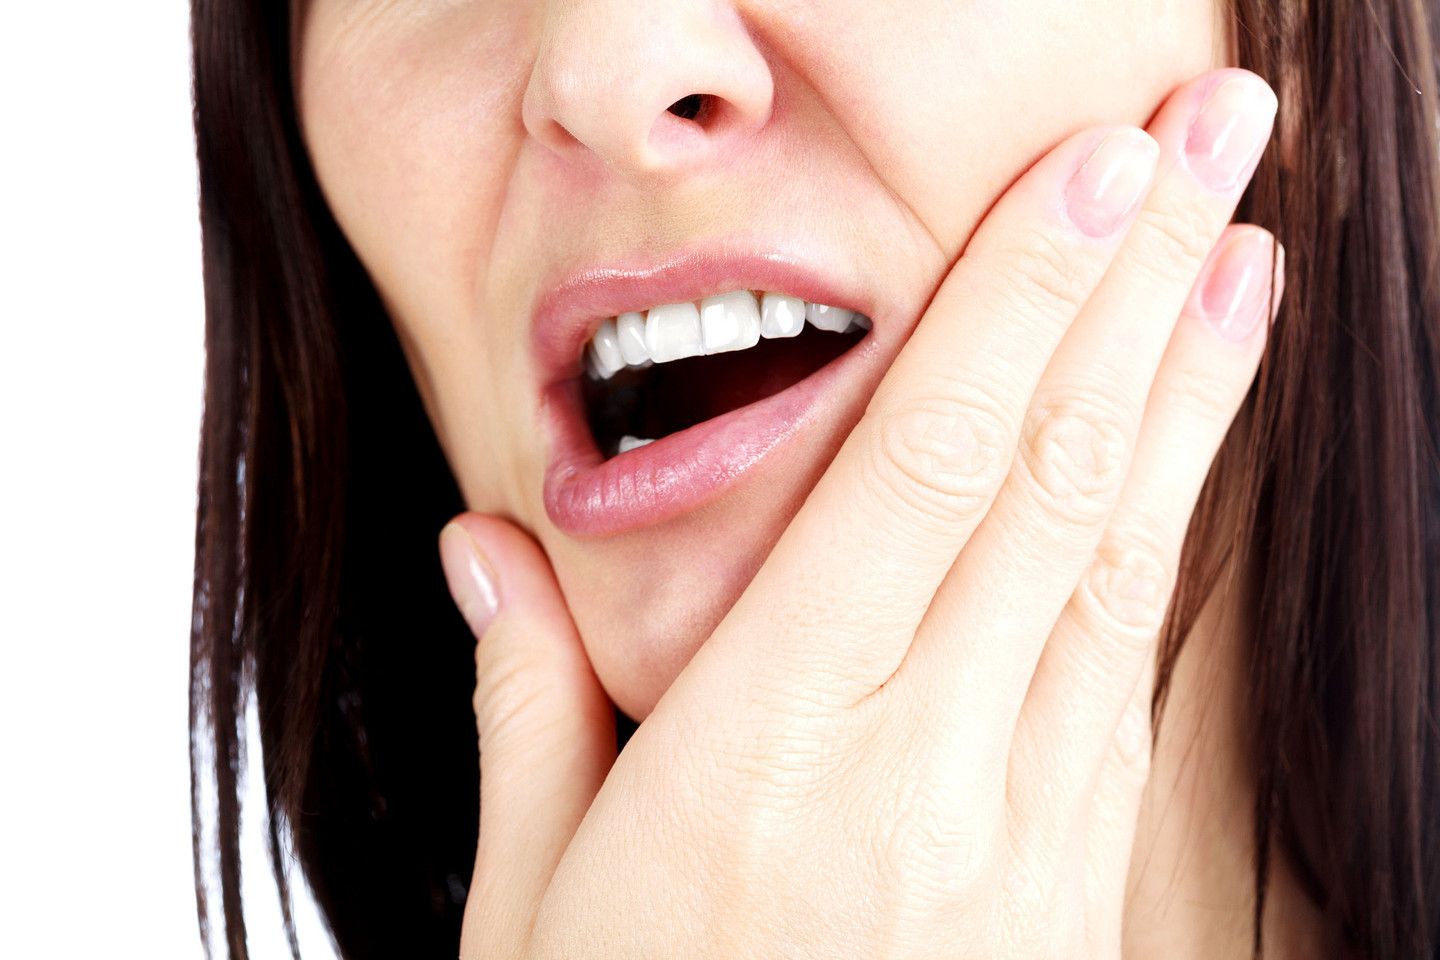  Jei kankina dantų skausmas, padės druska.<br> 123rf.com nuotr.